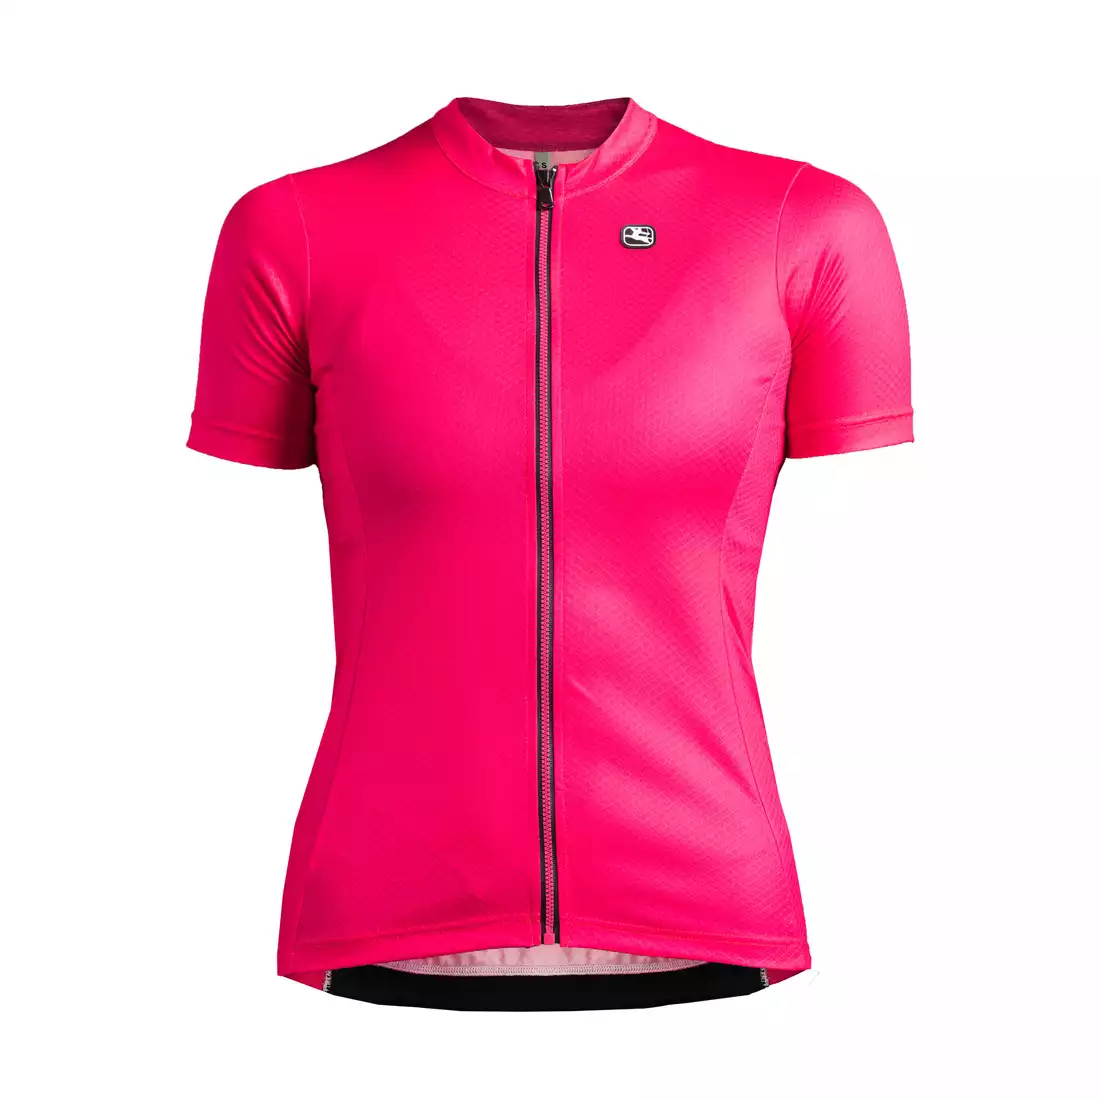 GIORDANA FUSION damska koszulka rowerowa różowa